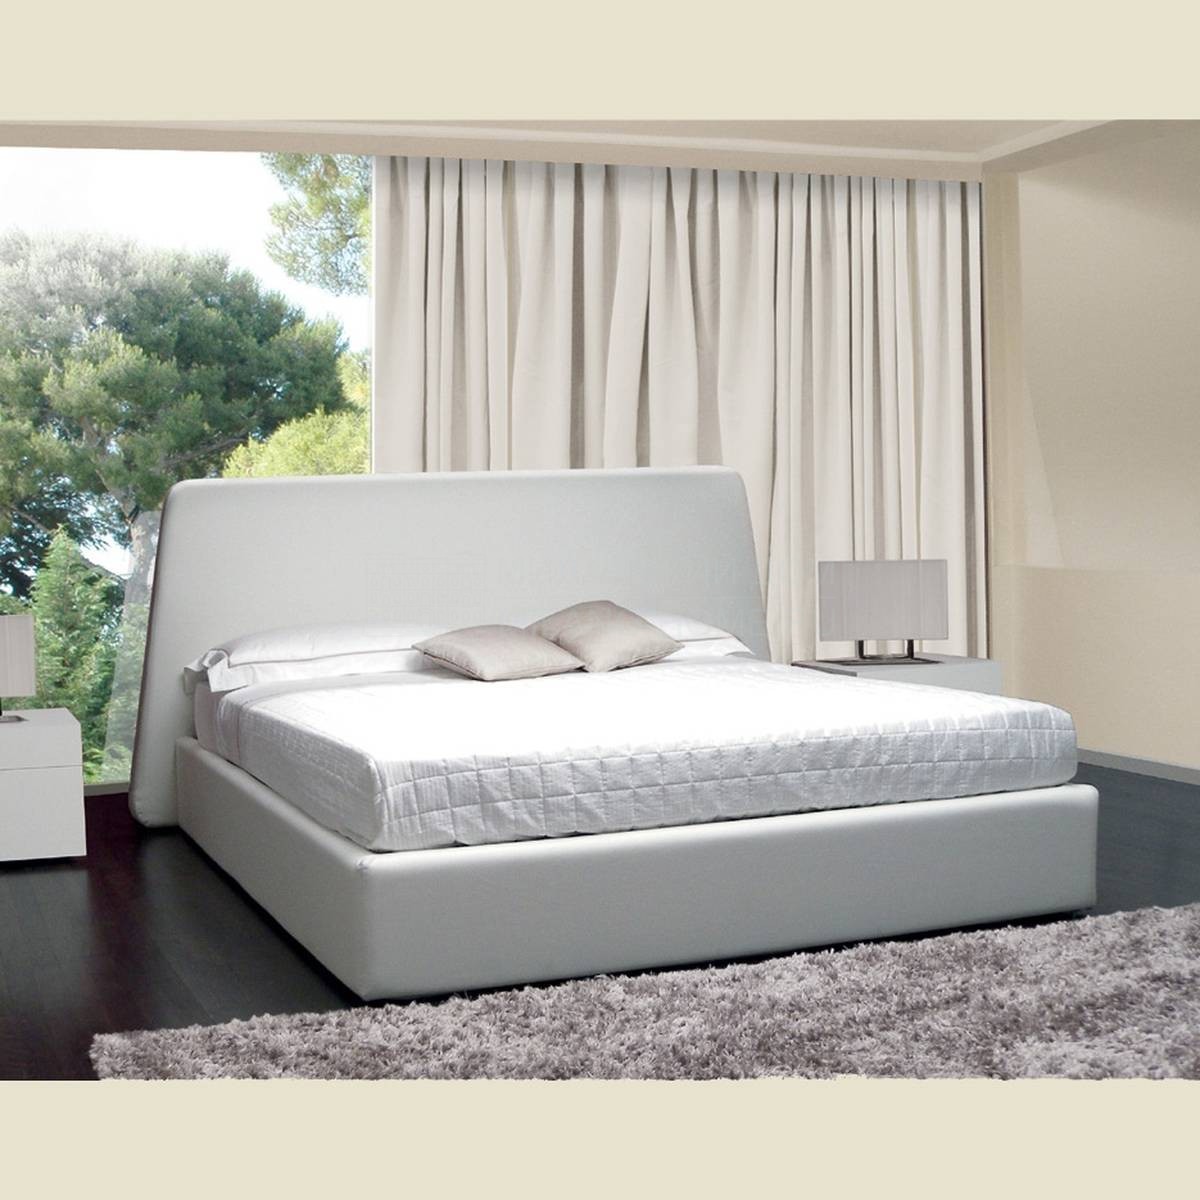 Двуспальная кровать Clio/bed из Италии фабрики BESANA